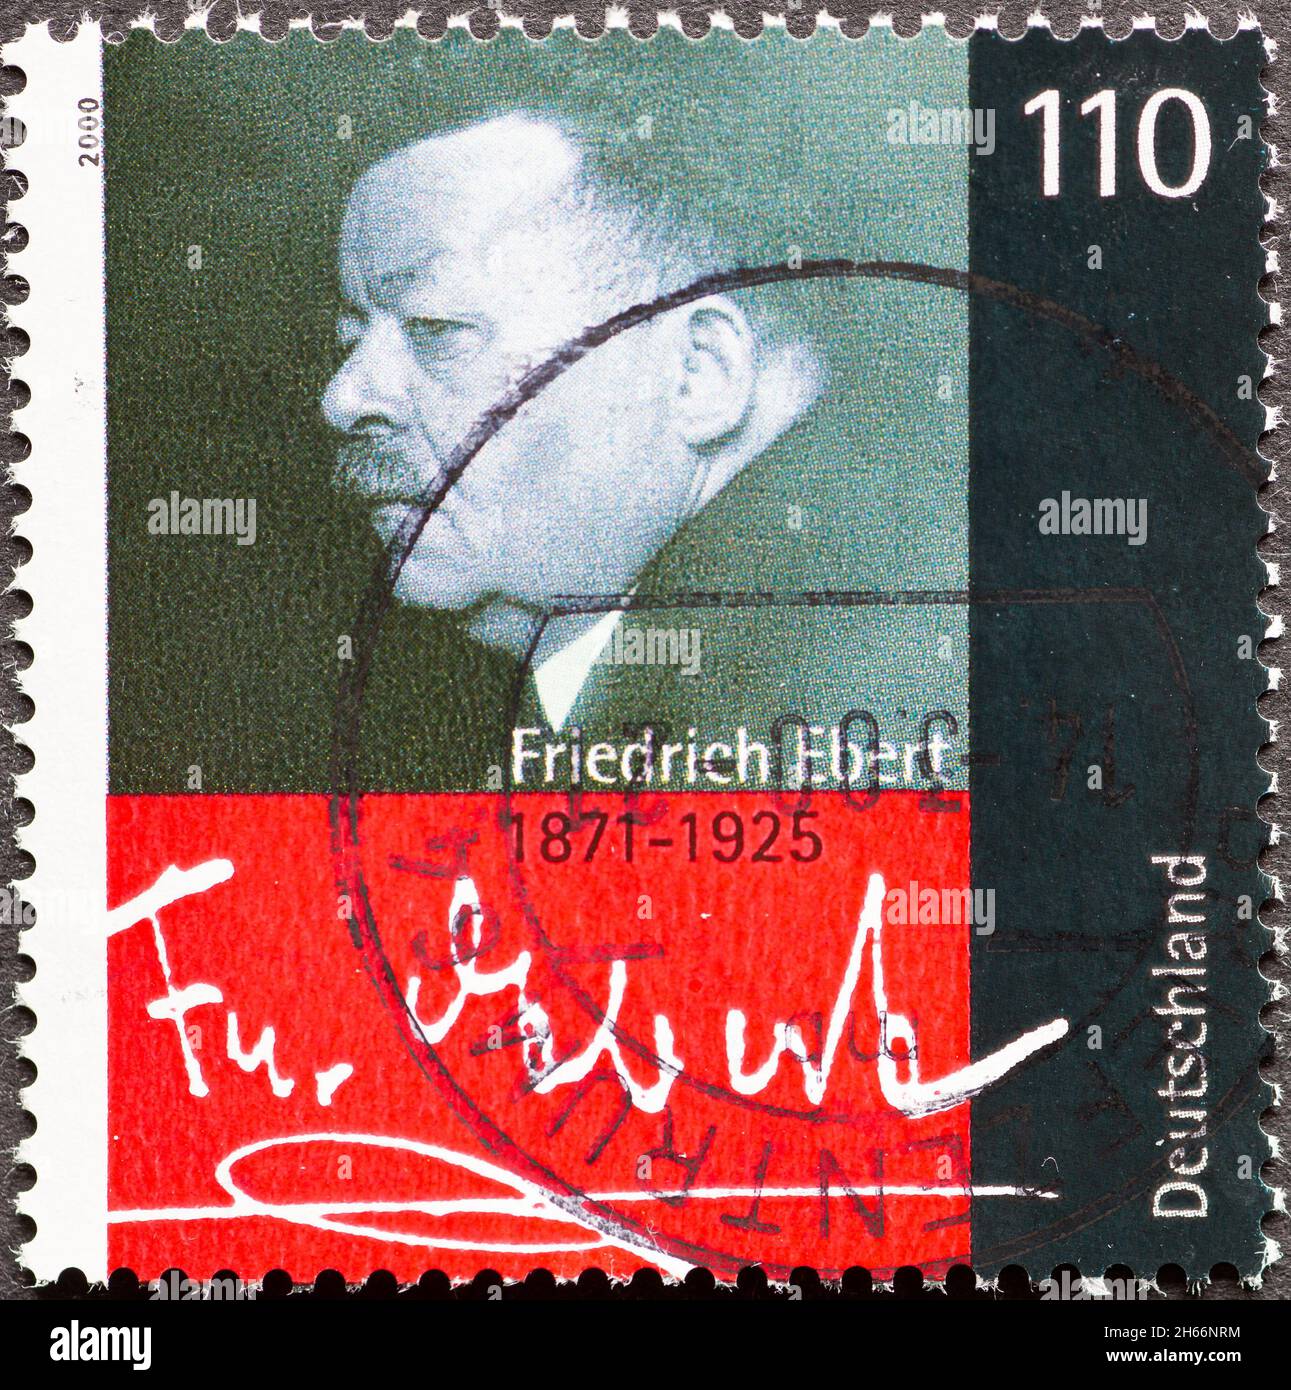 ALLEMAGNE - VERS 2000 : timbre-poste de l'Allemagne, montrant un portrait avec la signature du social-démocrate allemand et homme politique Friedrich Ebert Banque D'Images